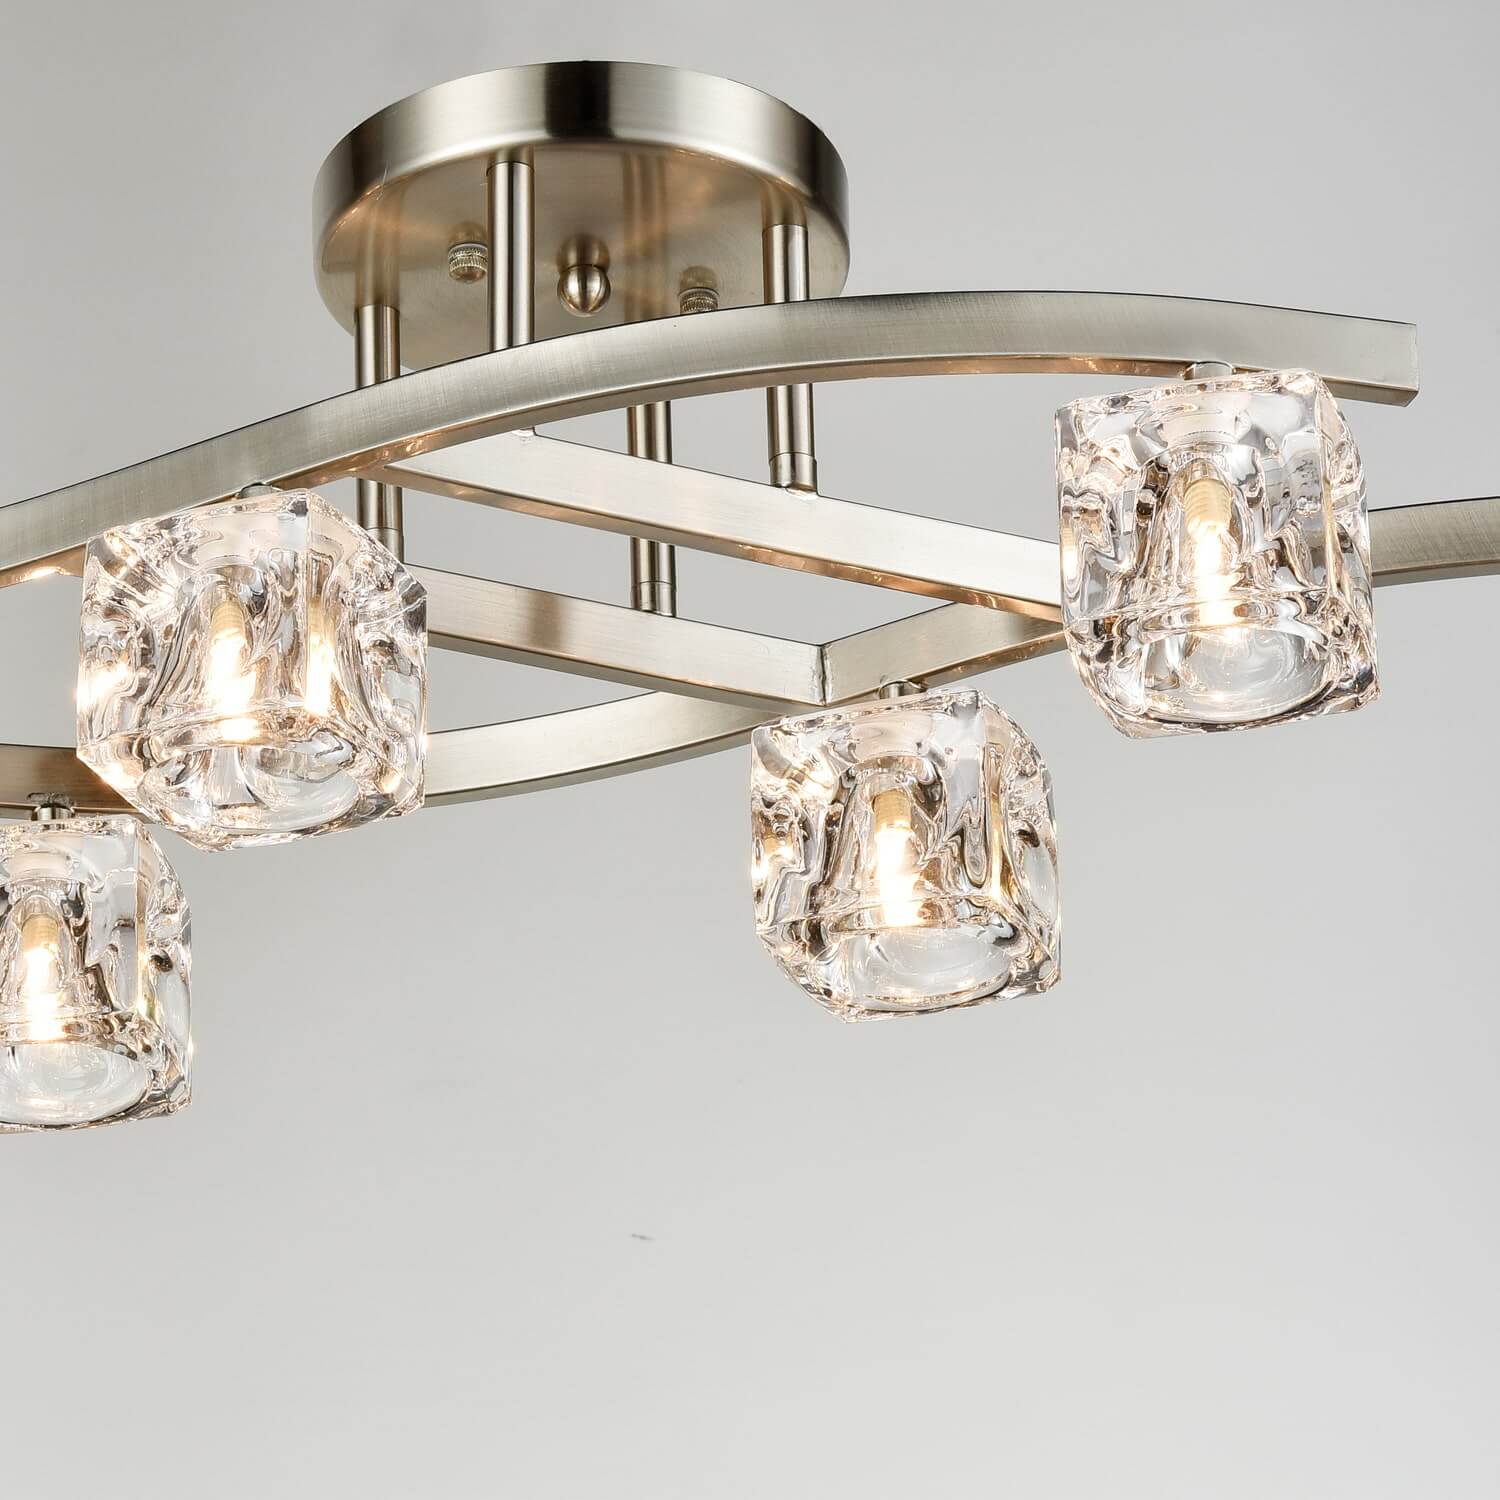 Modern Crystal Ceiling Lights Brushed Nickel-6 Light